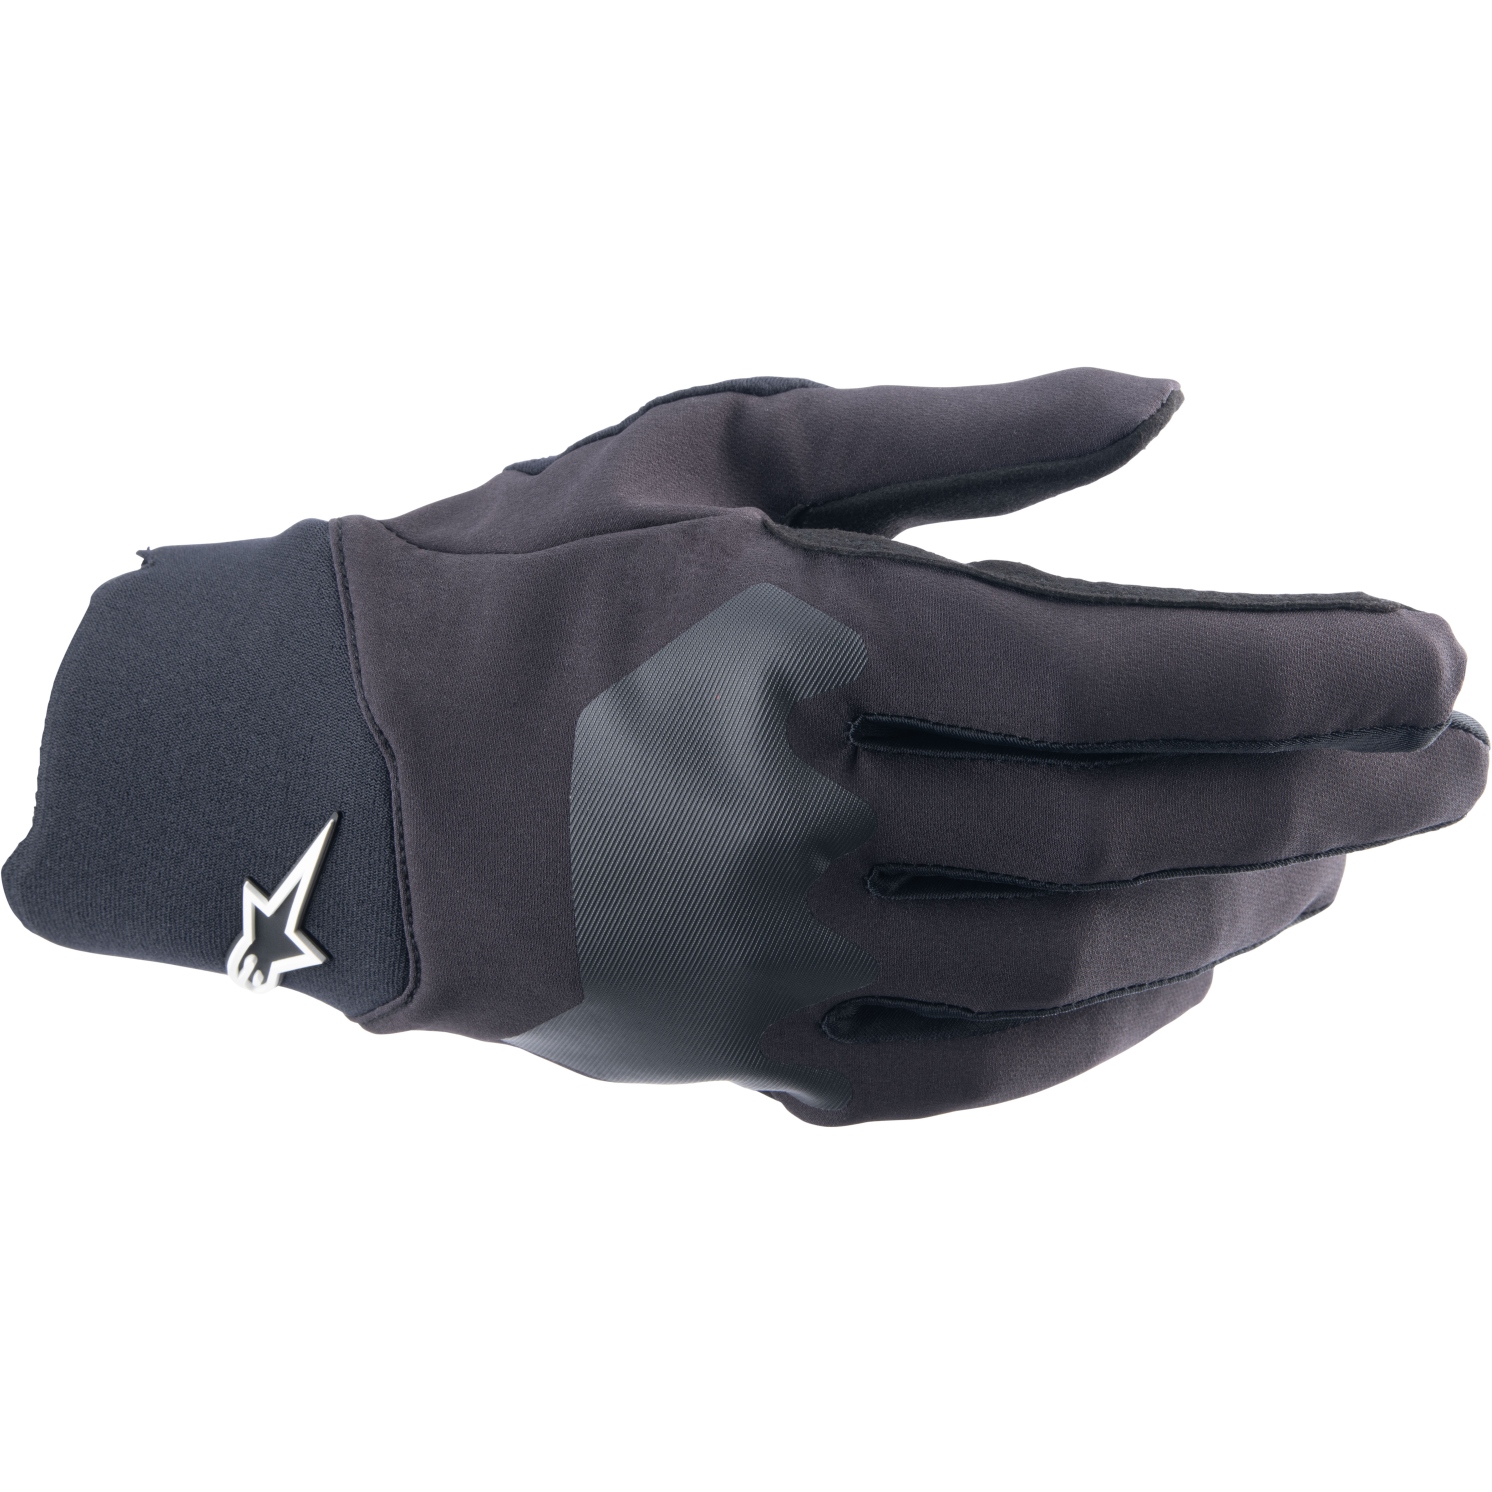 Produktbild von Alpinestars A-Supra Handschuhe - schwarz